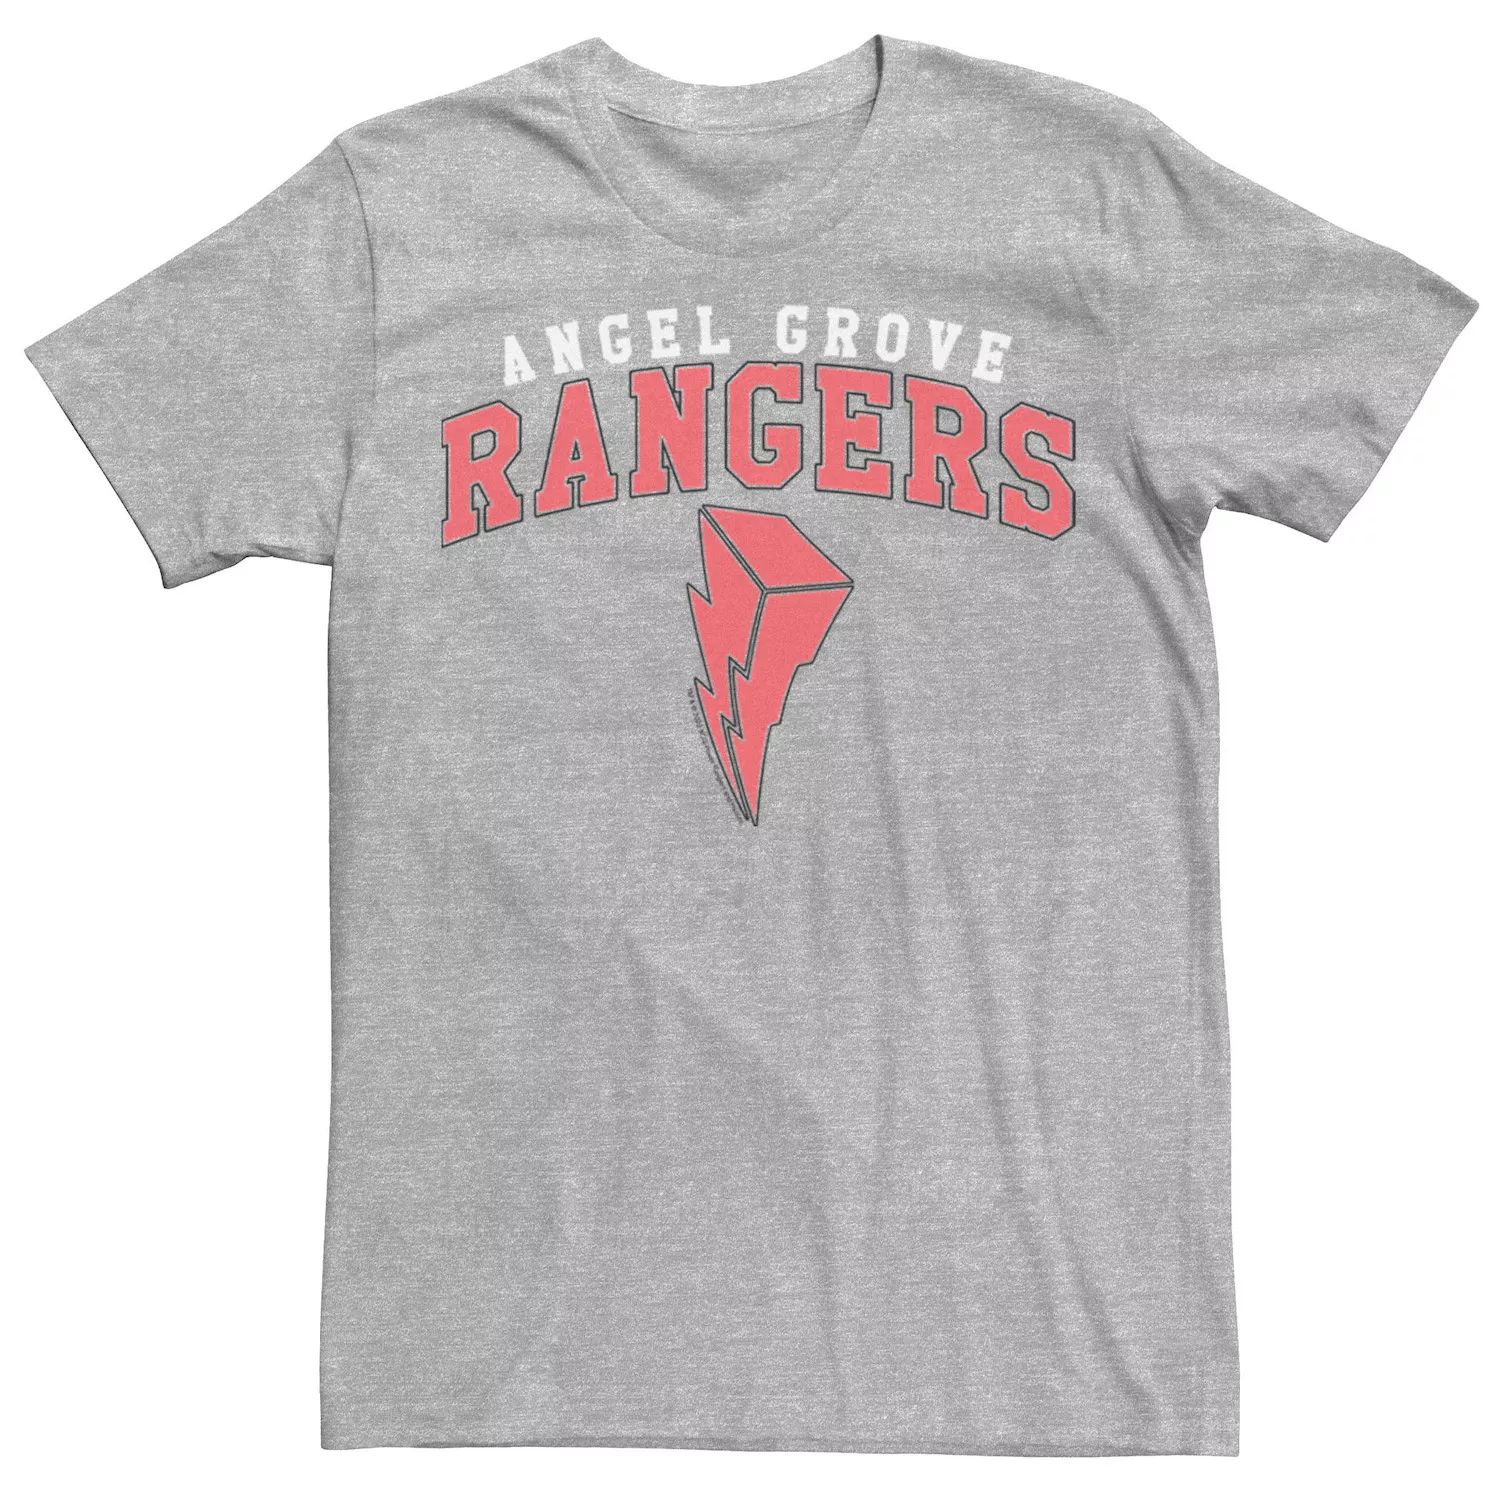 Мужская футболка Power Rangers Angel Grove Ranger Licensed Character